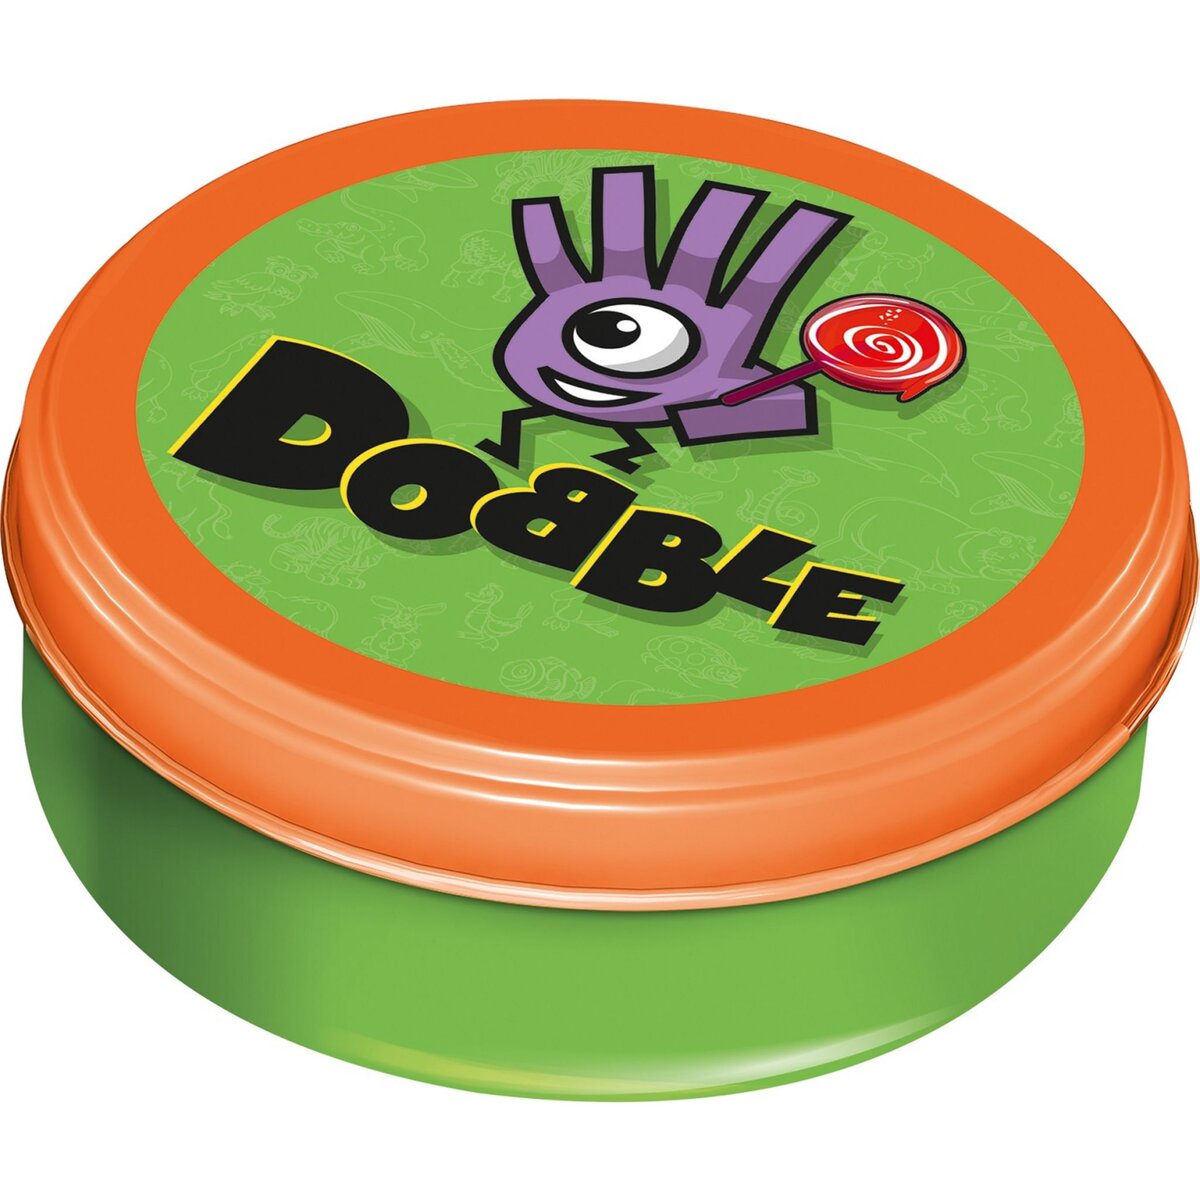 Dobble Kids: jeu de société